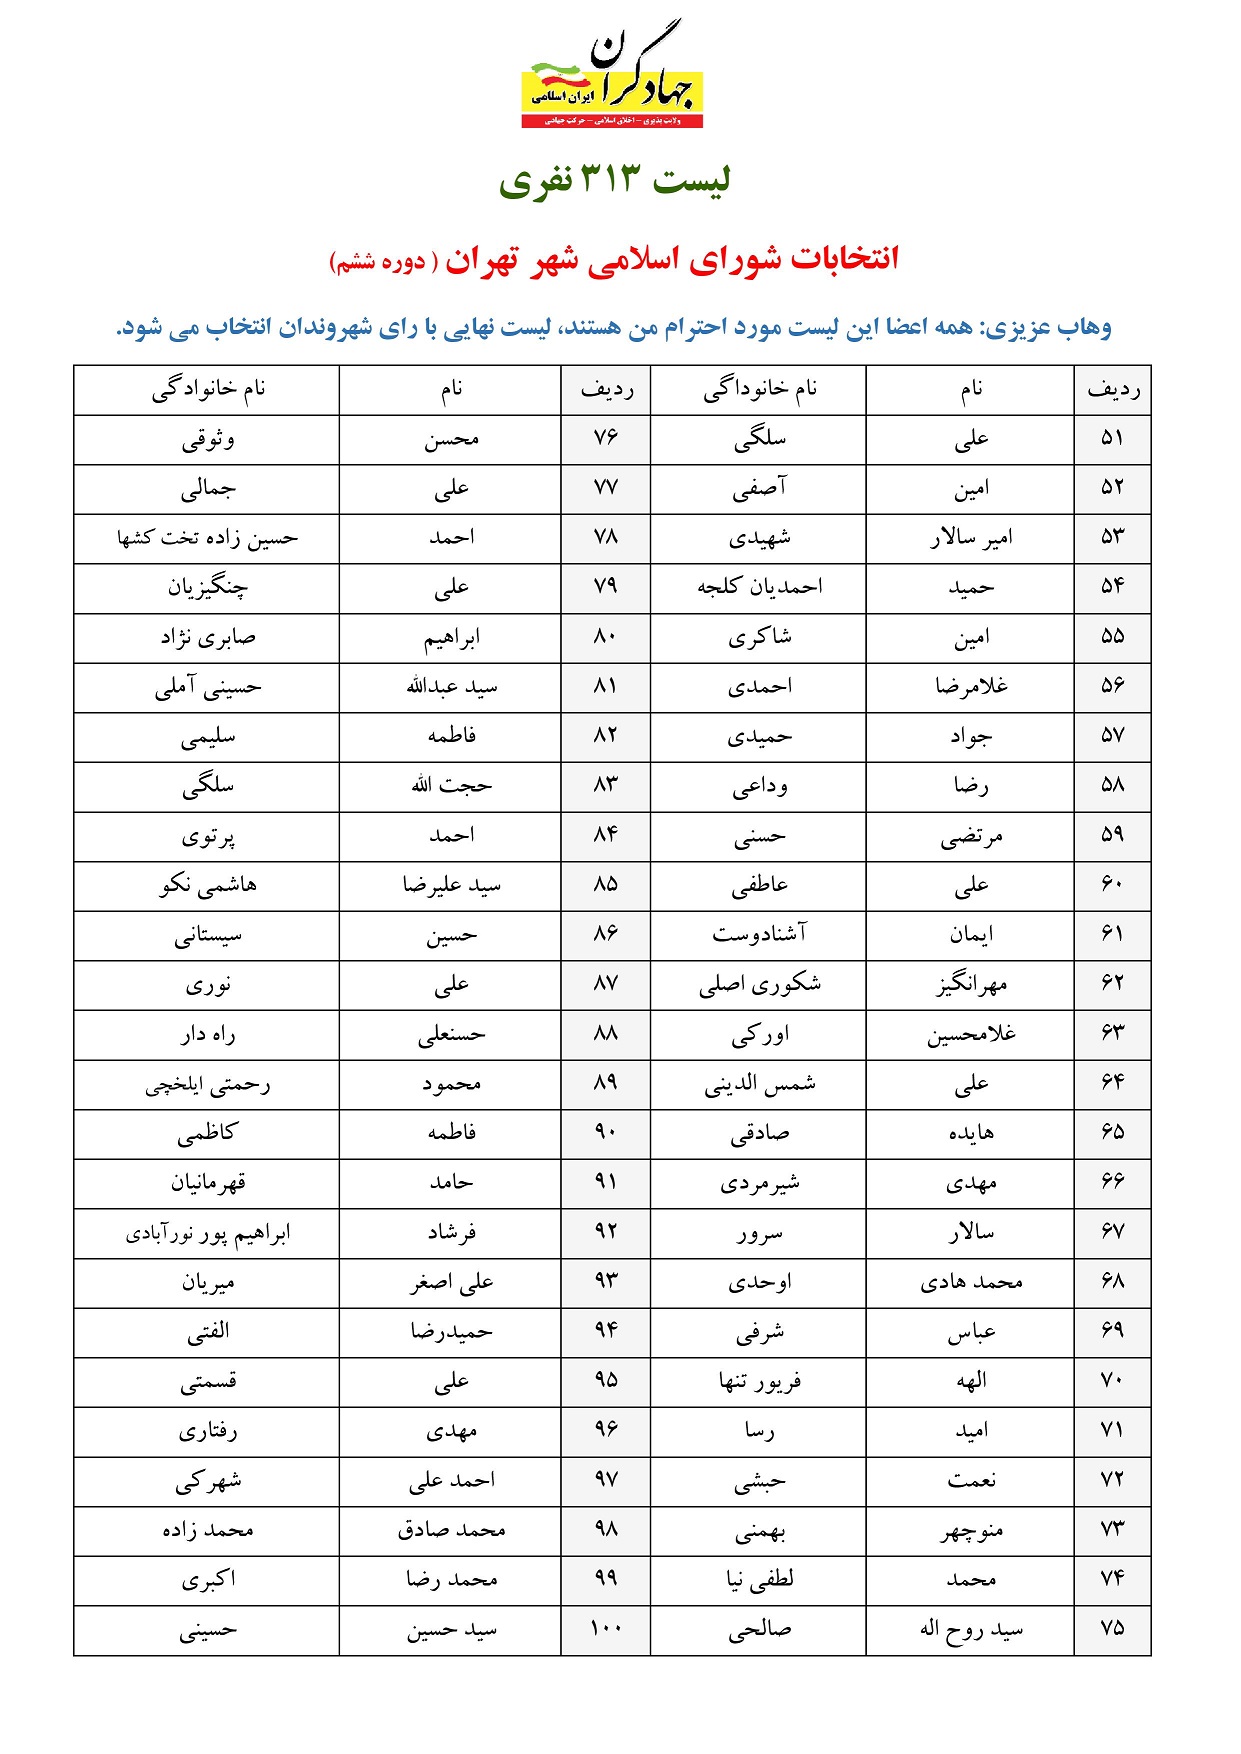 لیست شورای شهر جبهه جهادگران